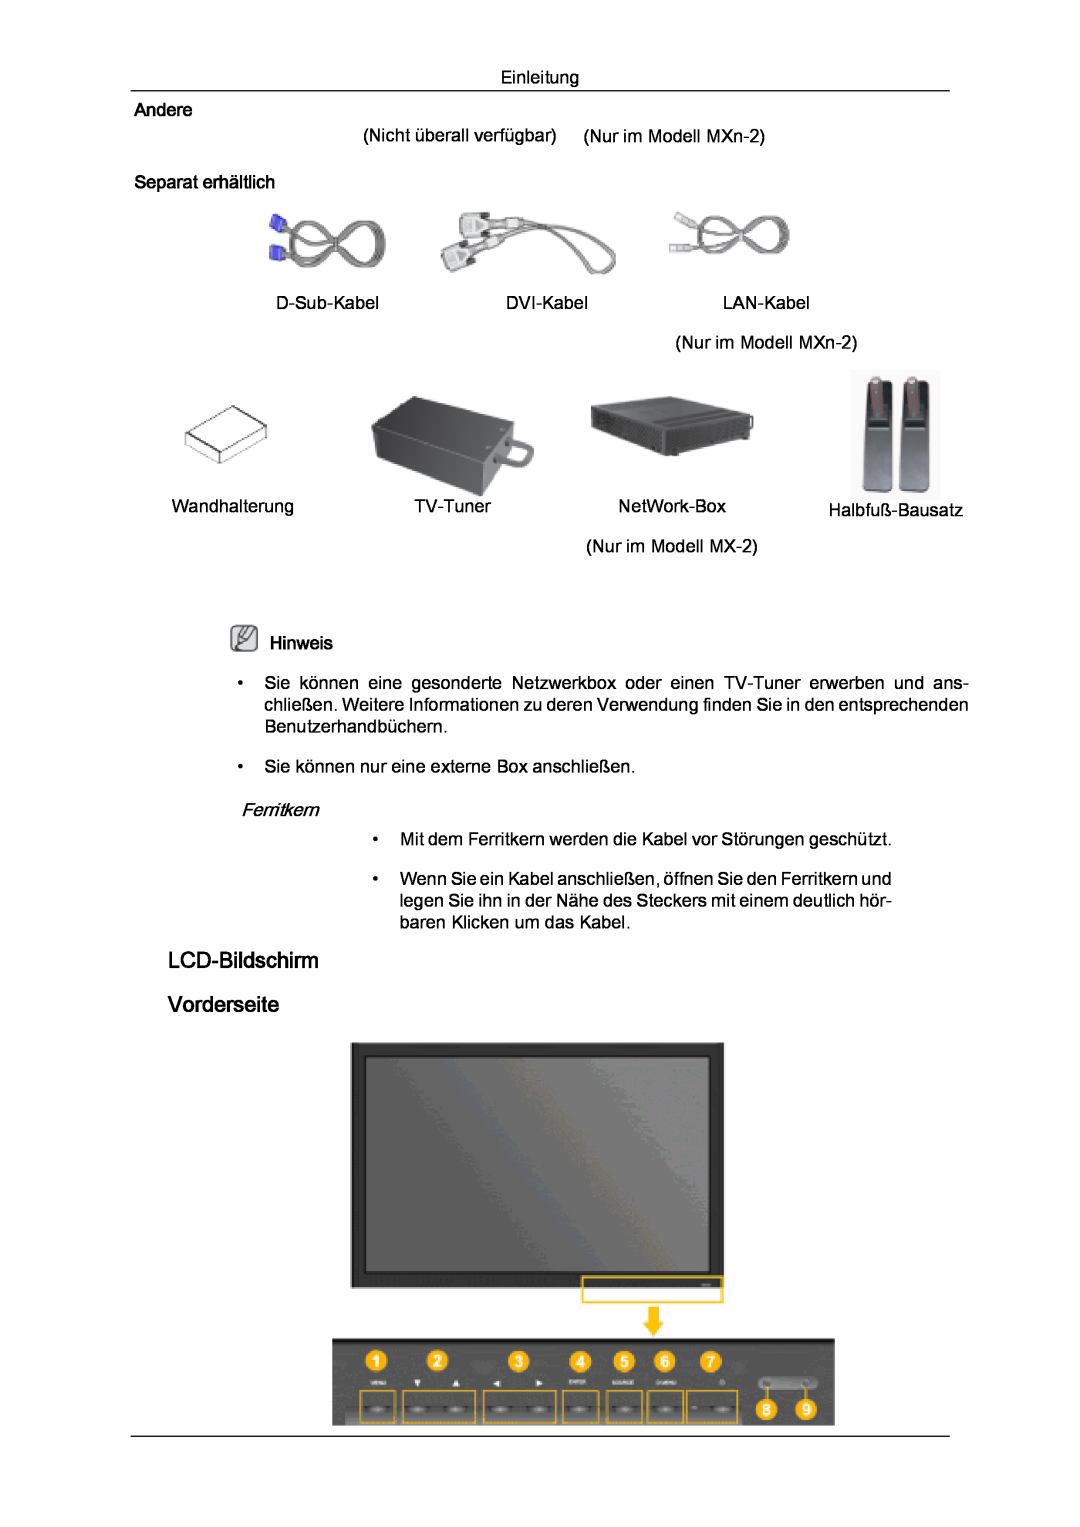 Samsung LH32MGQPBC/EN, LH32MGULBC/EN, LH32MGQLBC/EN manual LCD-Bildschirm Vorderseite, Separat erhältlich, Andere, Hinweis 